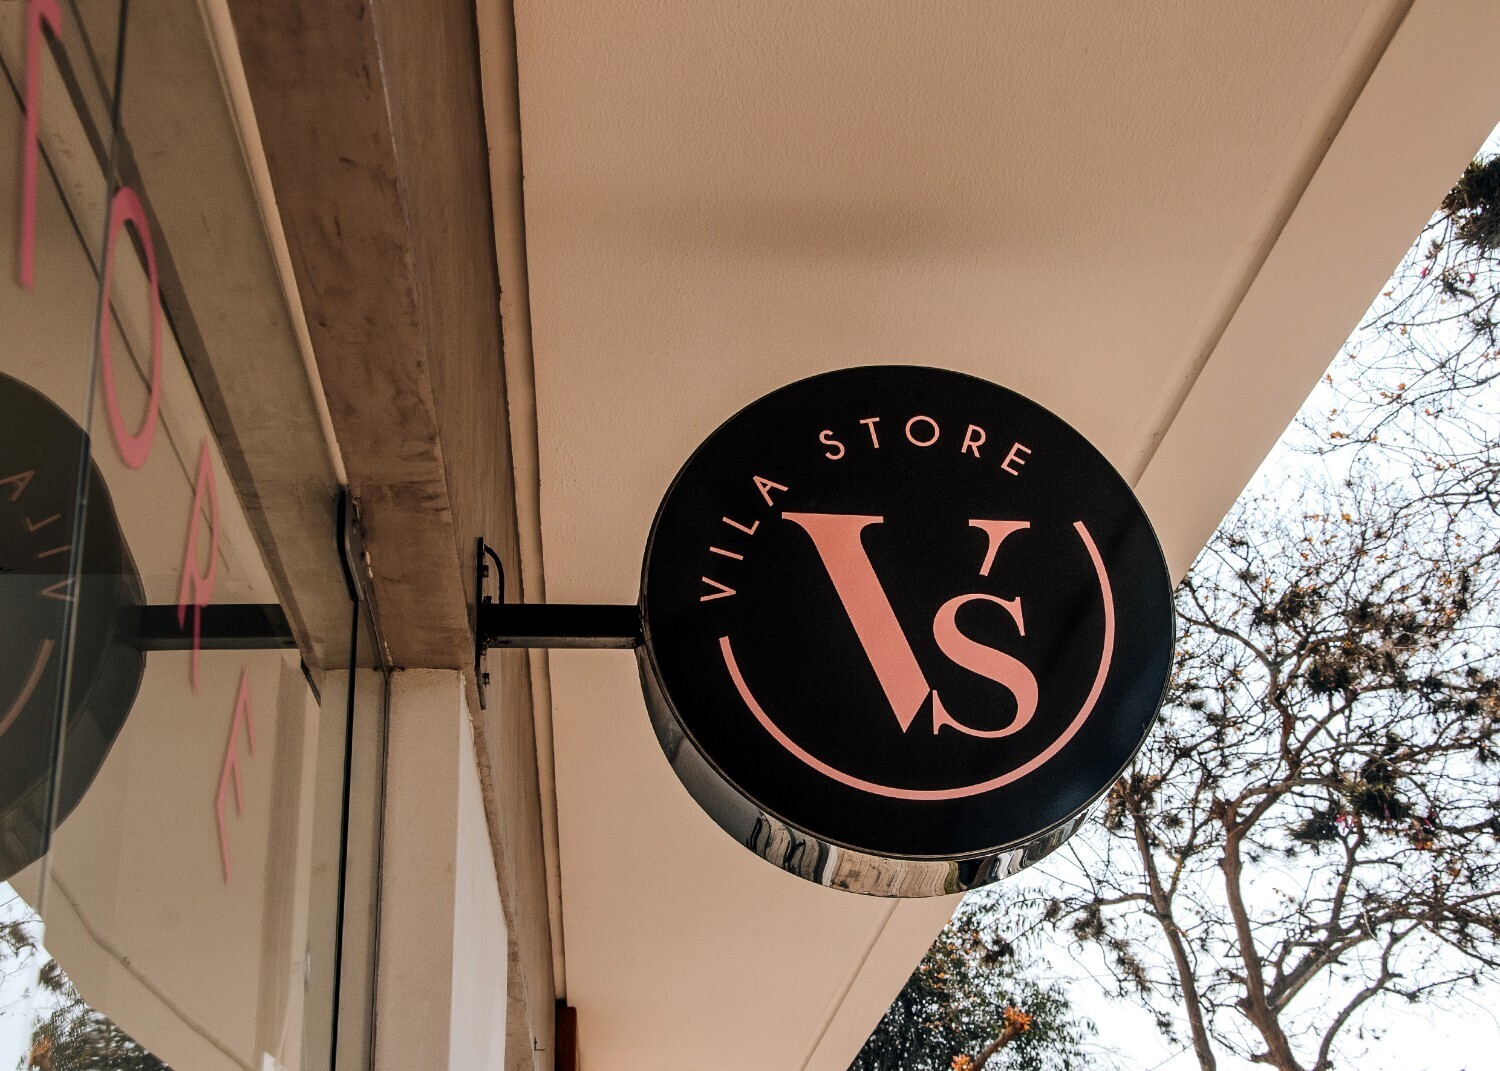 Vila-Store-15-imresizer